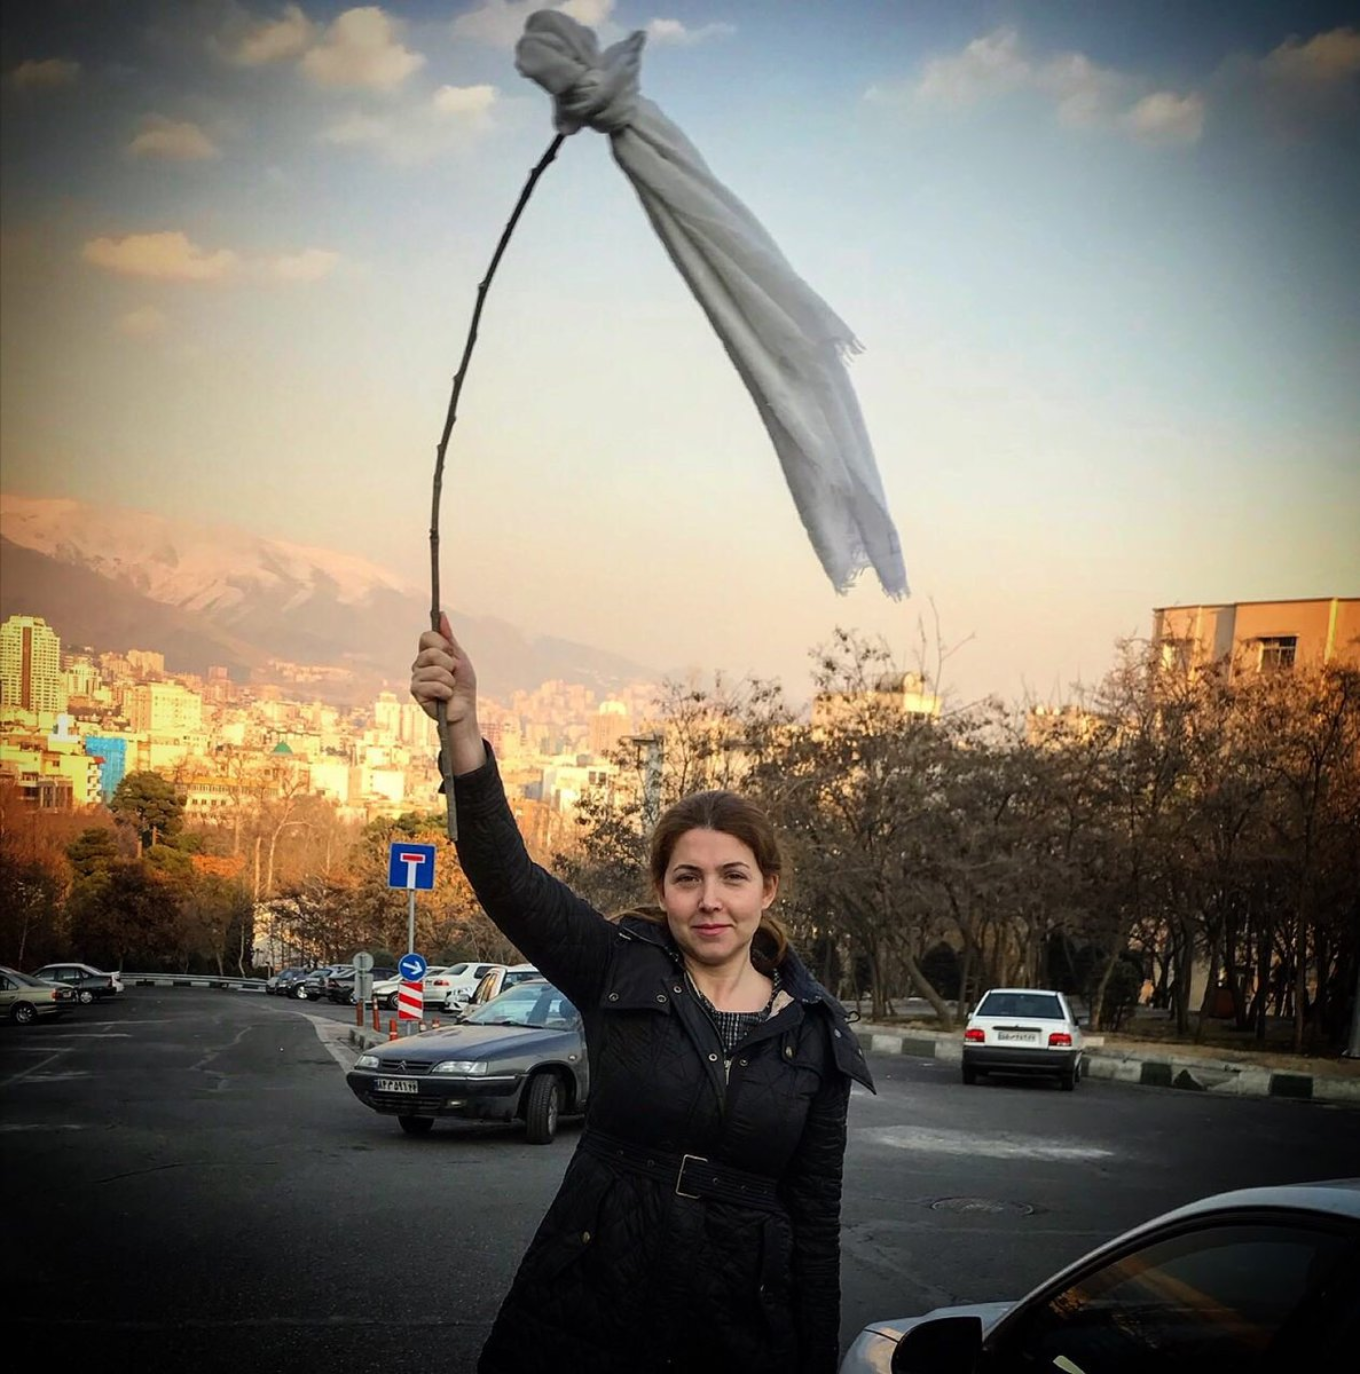 Сняла хиджаб — получи 20 лет! Иранская активистка осуждена за участие в акции протеста Шаджаризаде, время, декабре, своем, Шапарк, хиджаба, прошлого, согласно, акции, свободы, лишения, этого, протеста, исламской, общественных, местах, будет, сайте, заявила, правила